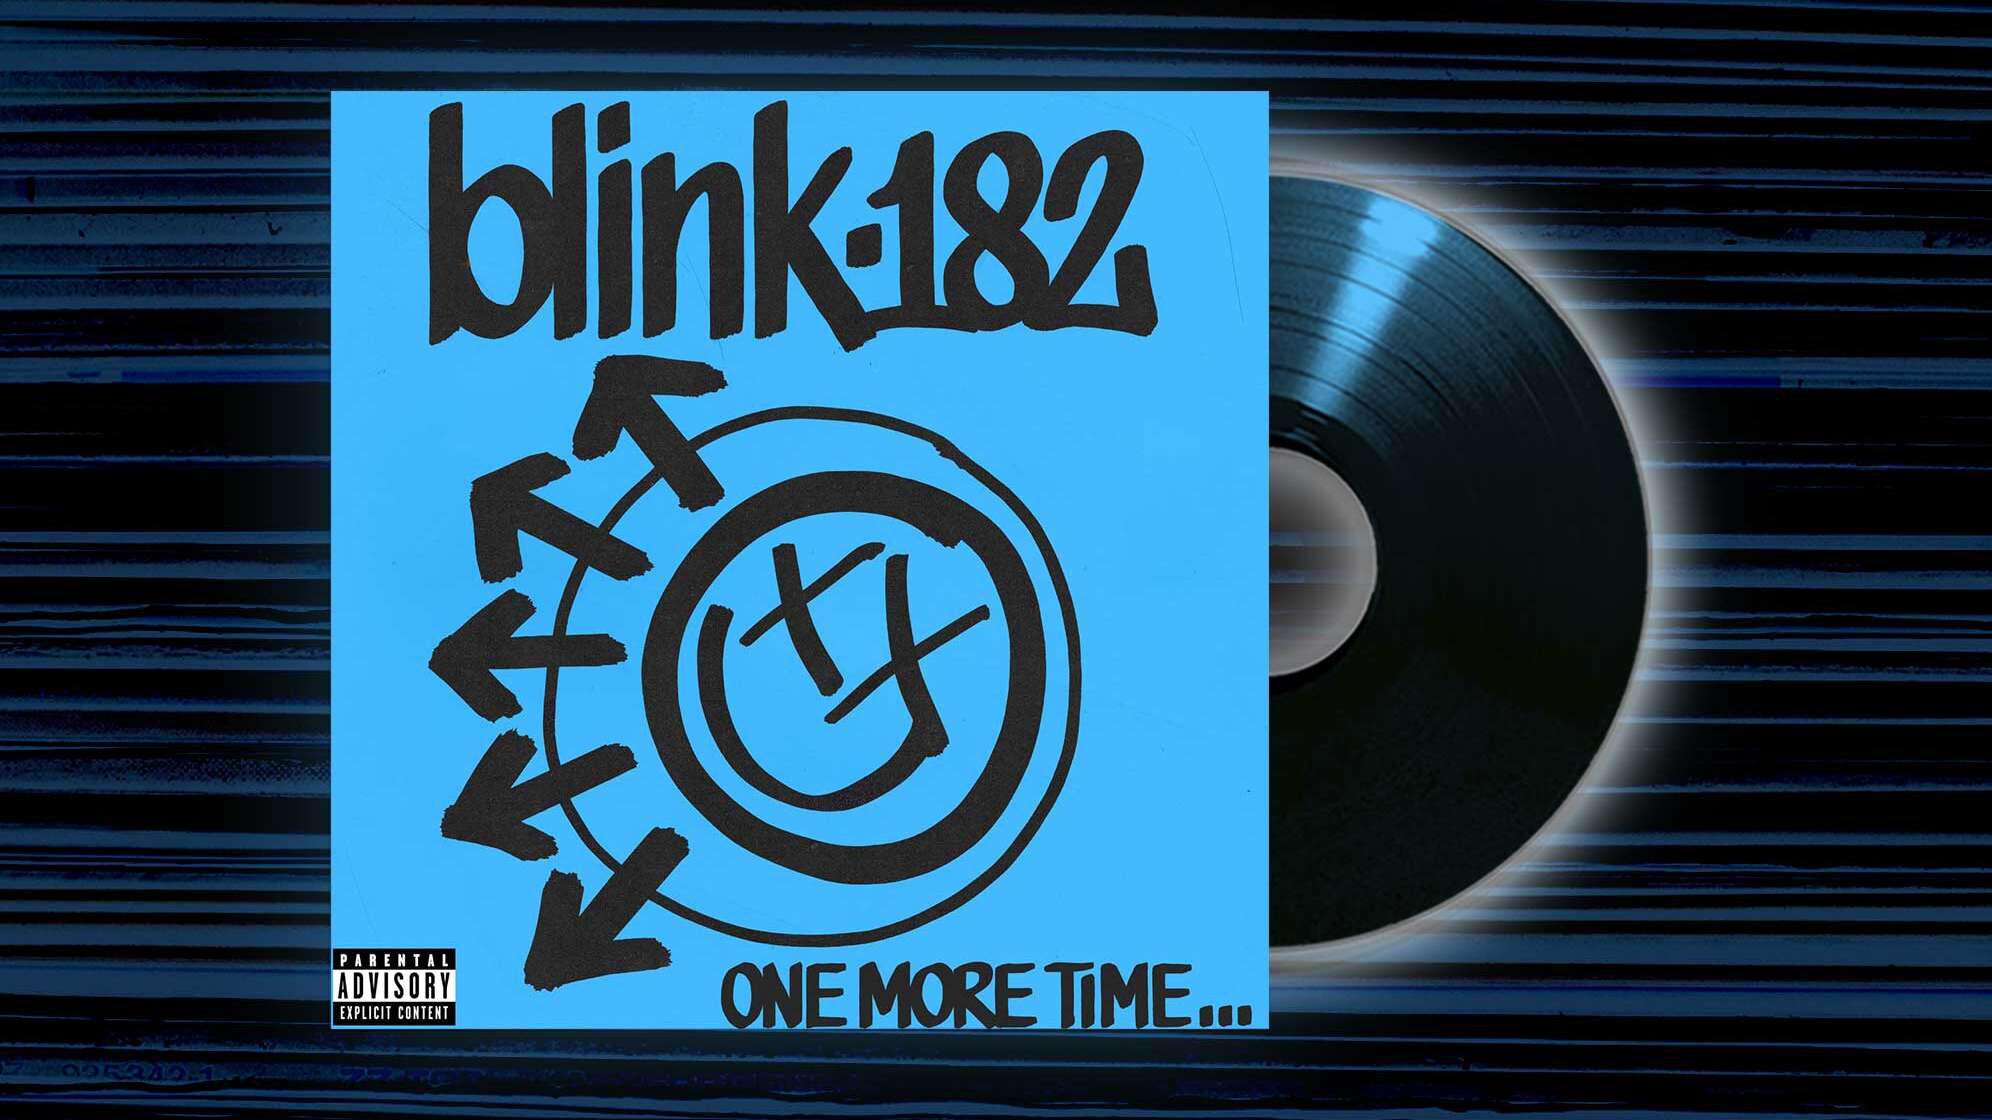 Das Albumcover von blink-182 zu One More Time